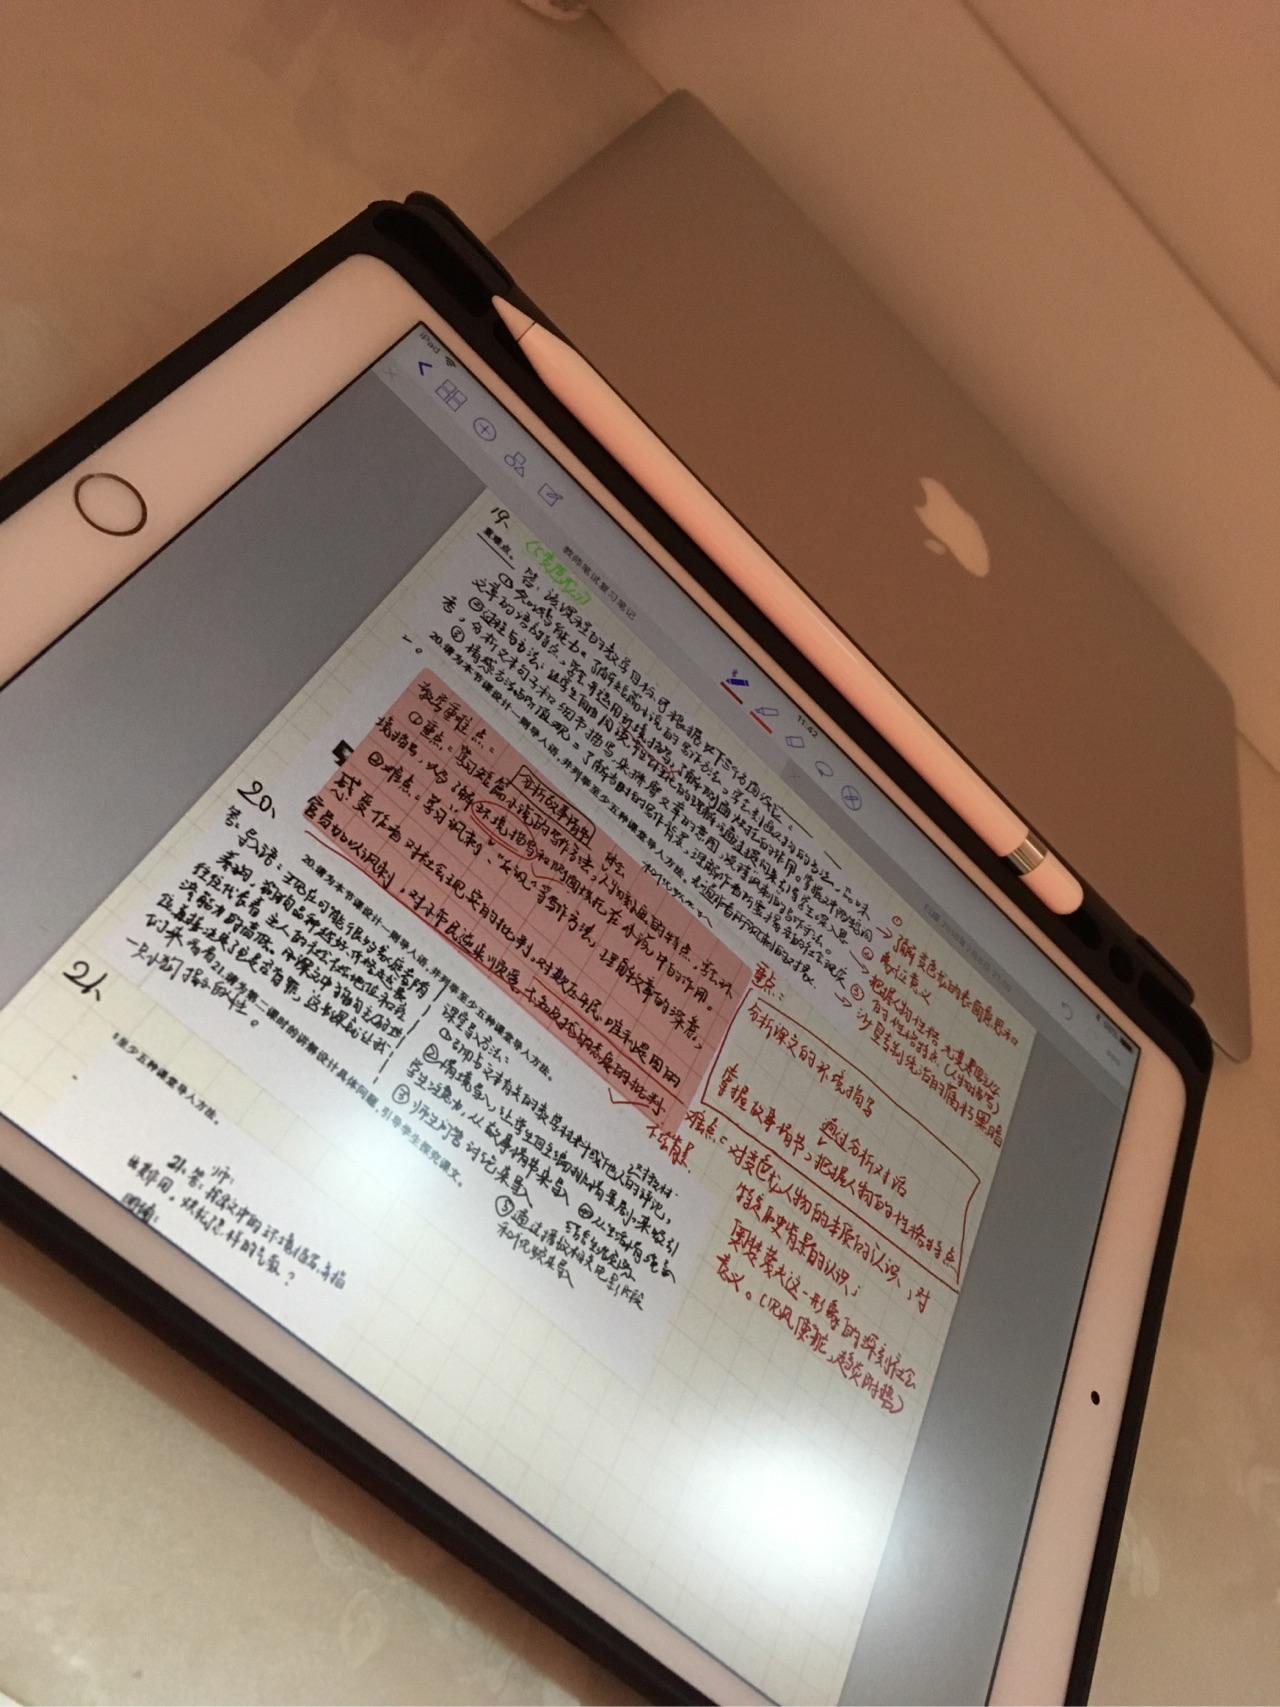 iPad Pro 适合学生做笔记吗?